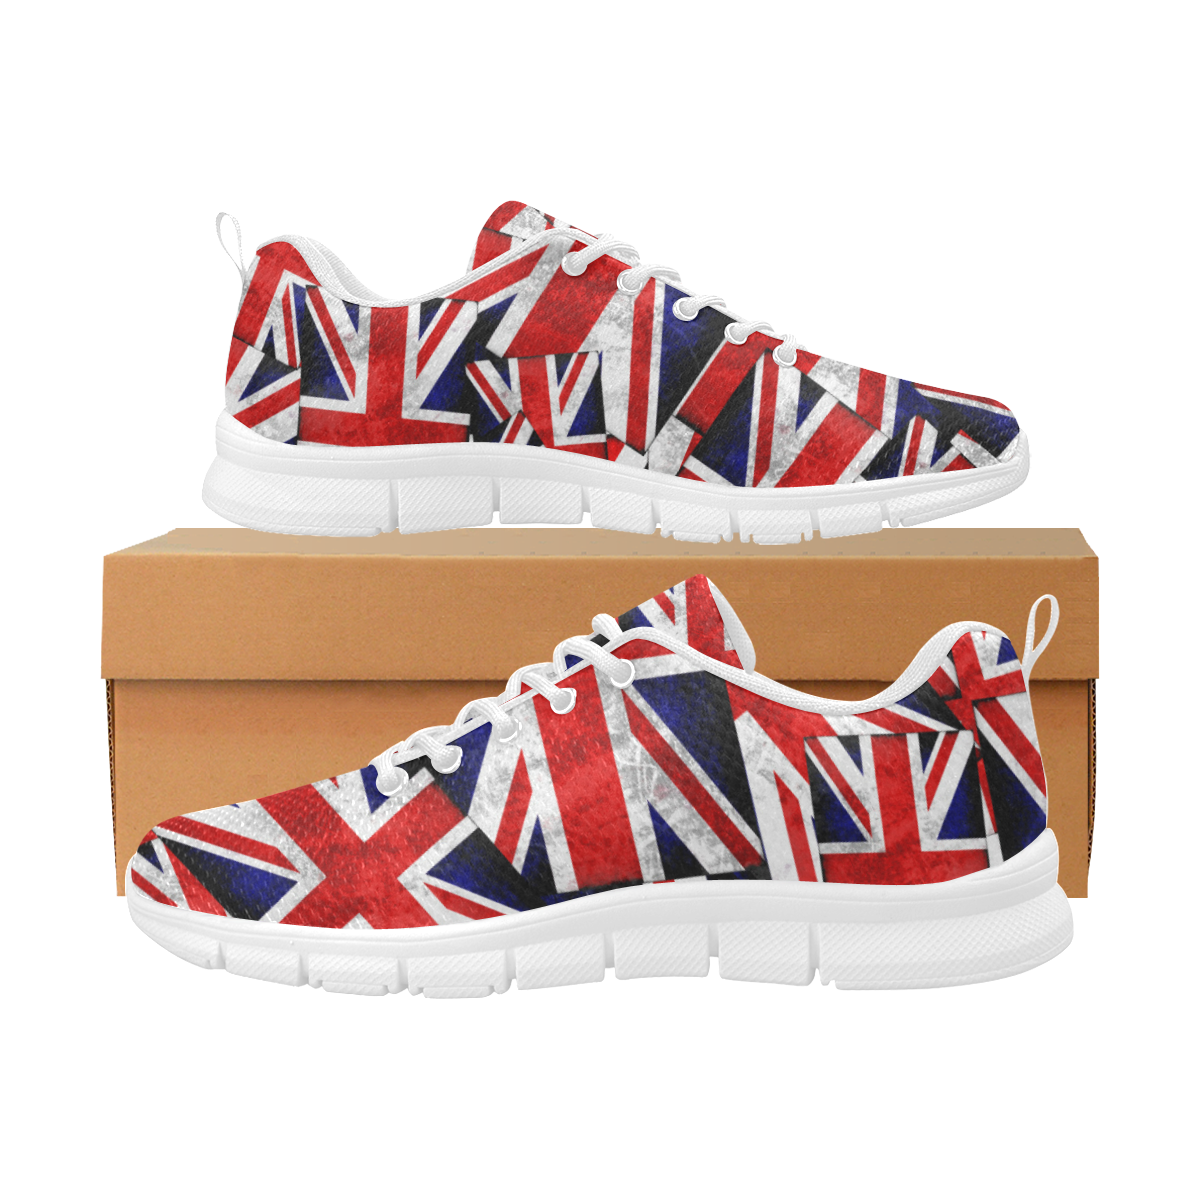 Union Jack British UK Flag Women's Breathable Running Shoes/Large (Model 055)